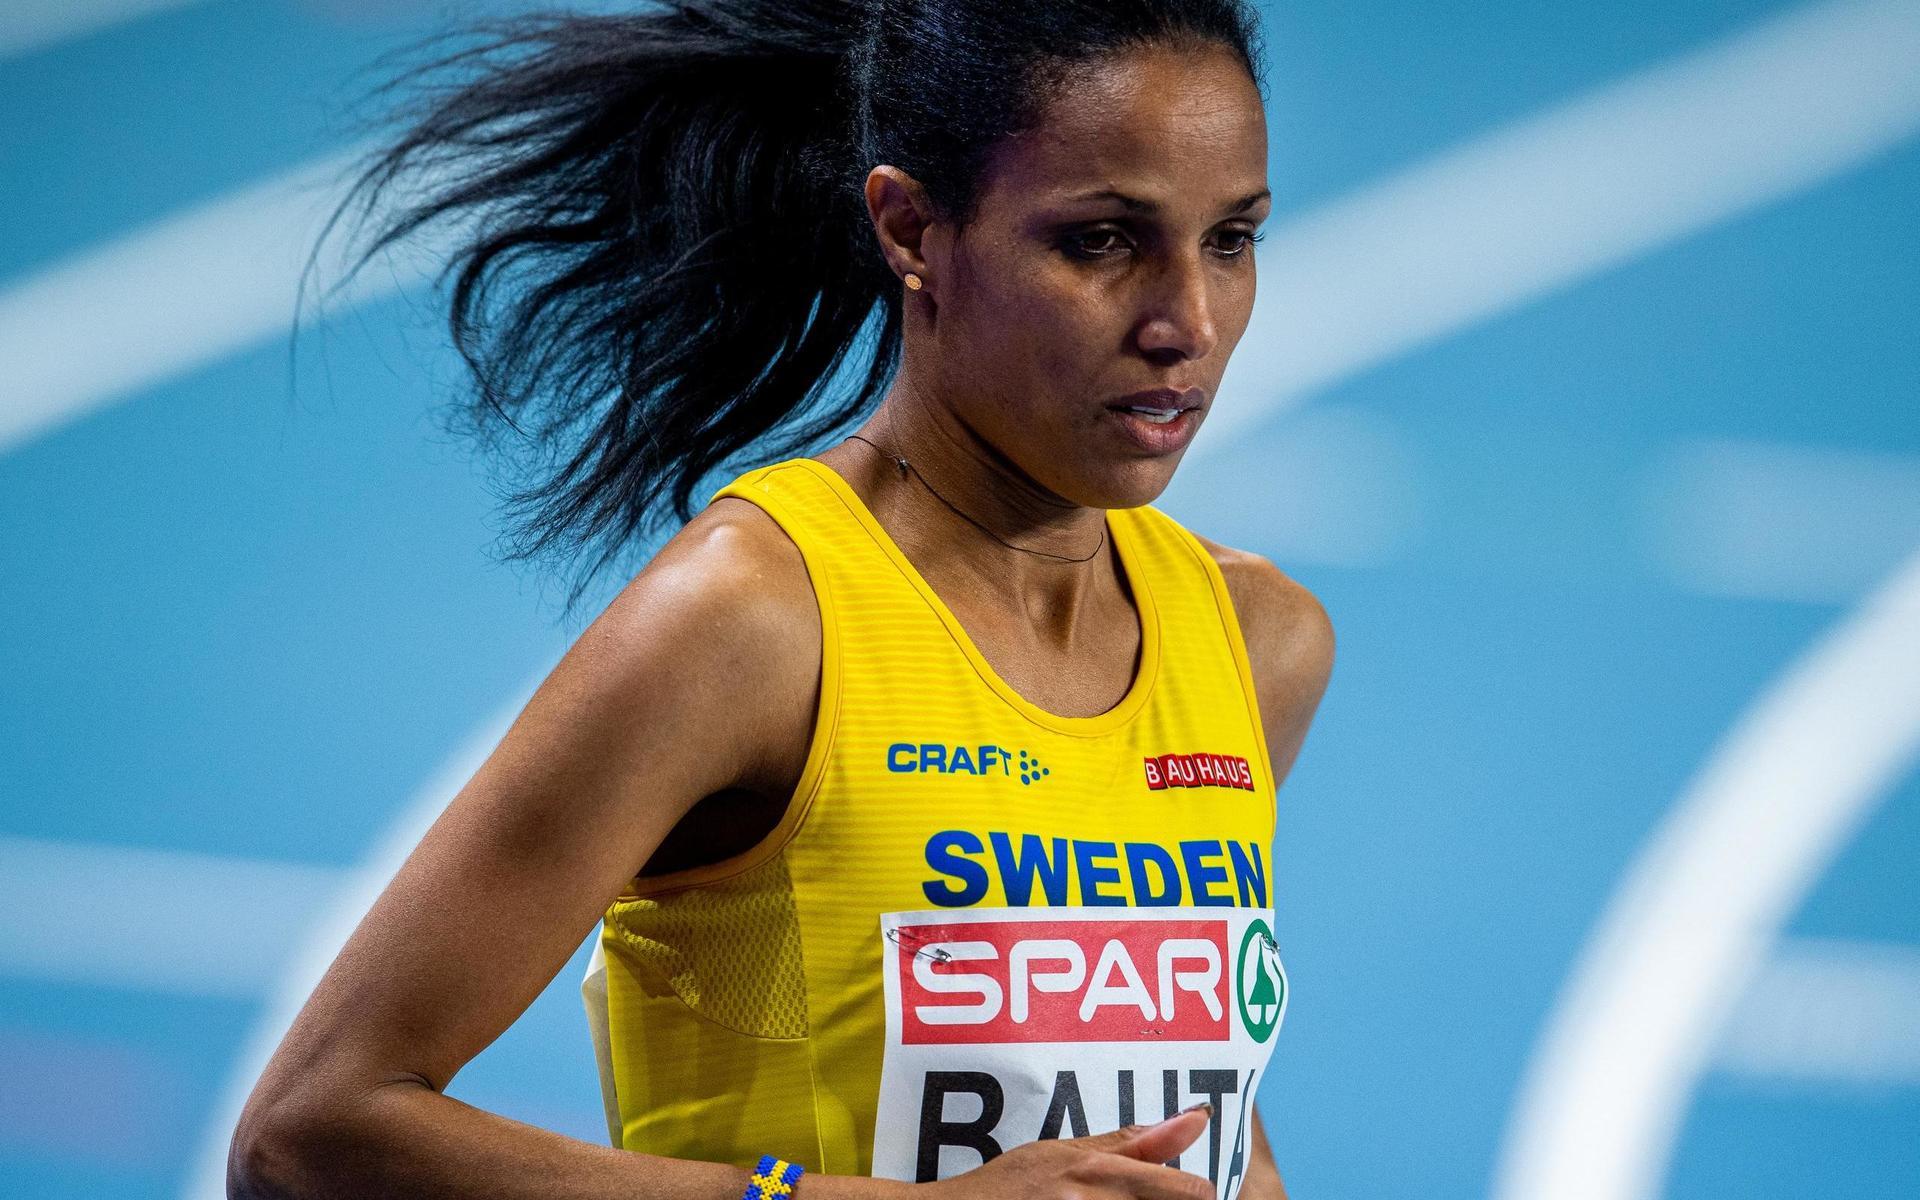 På tisdag nästa vecka springer Hälles Meraf Bahta ett specialutformat lopp i Stockholm för att klara OS-kvalgränsen. 